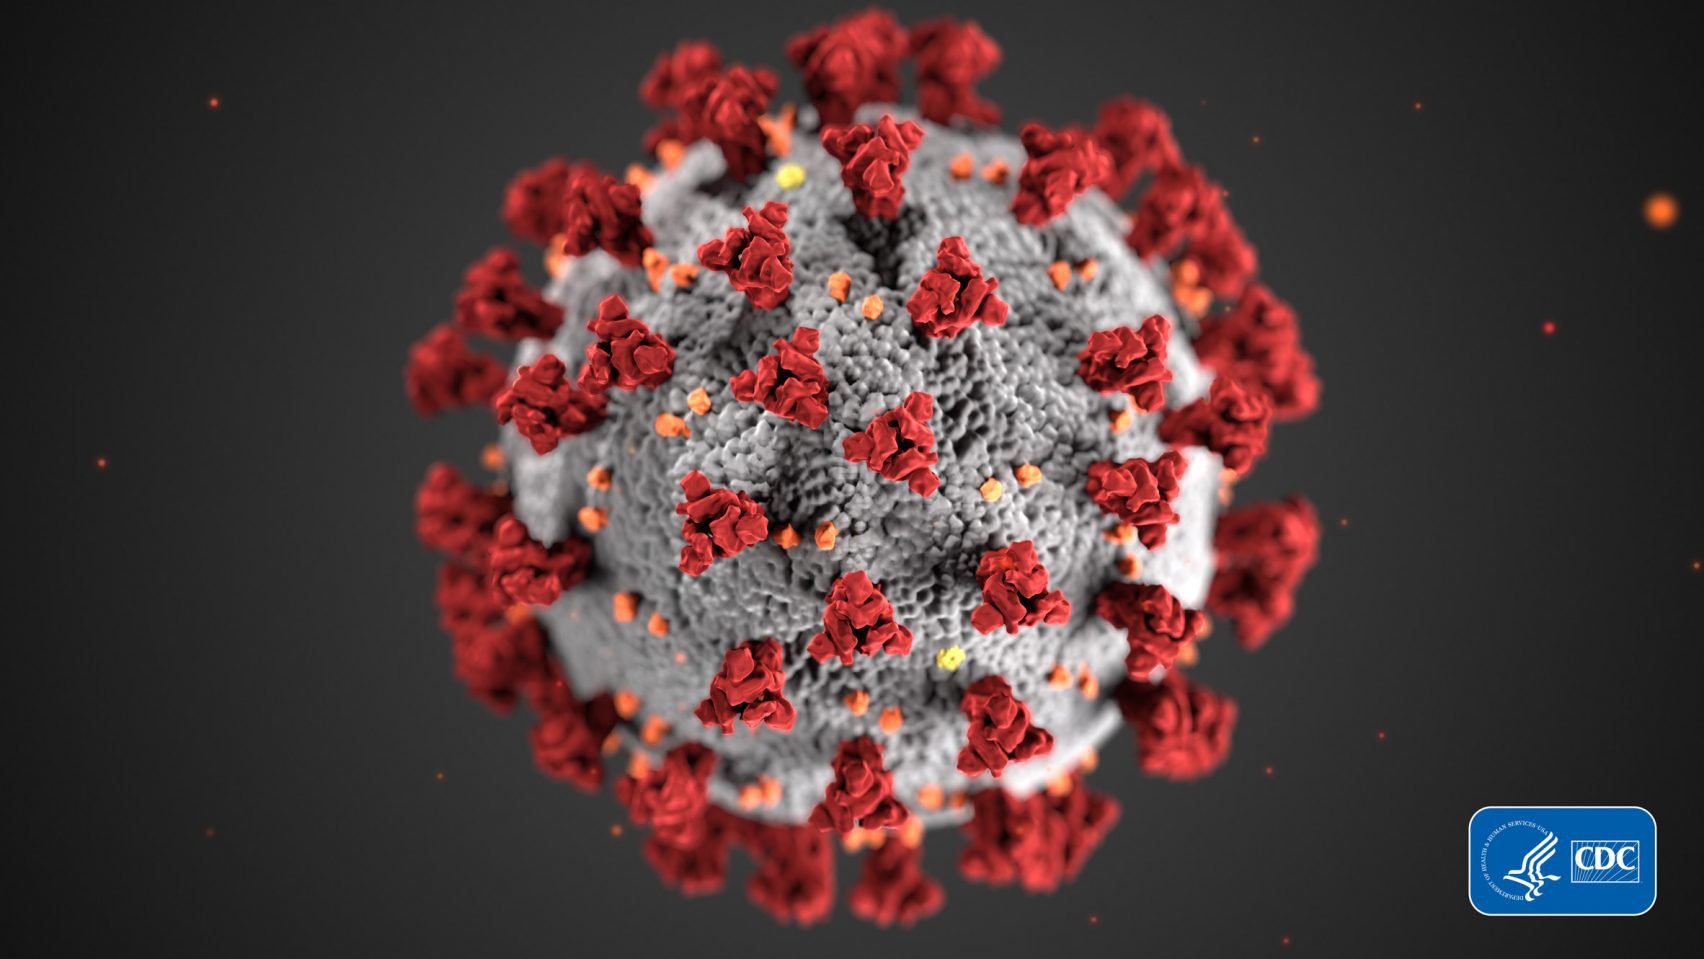 coronavirus-covid-19-illustation-cdc-medical-illustrator-dan-higgins_dezeen_2364_col_3-1704x959.jpg